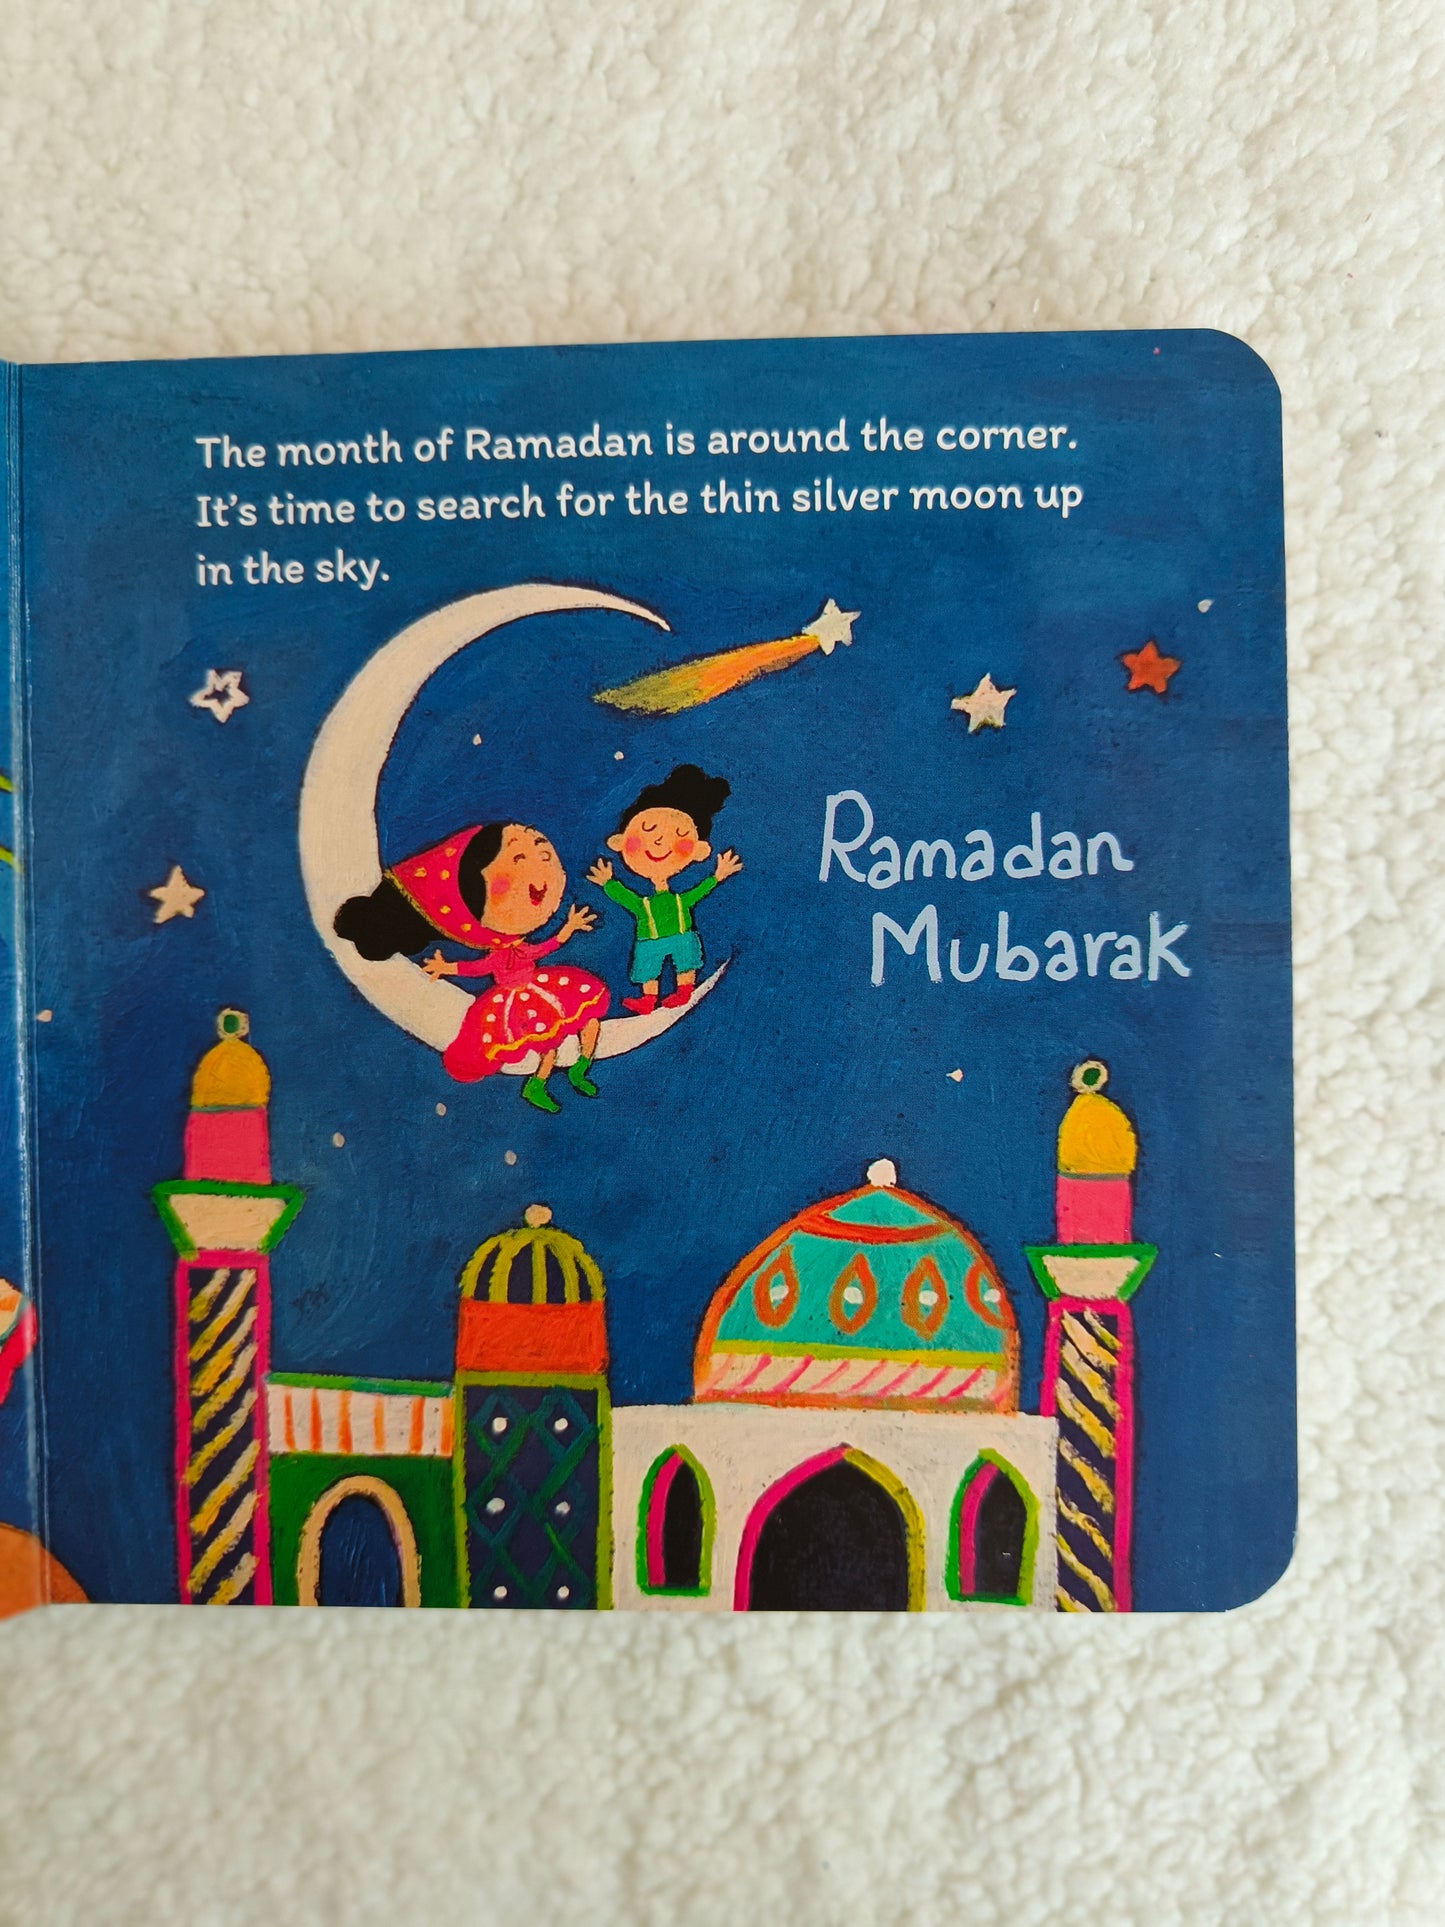 Ramadan and Eid - alifthebookstore